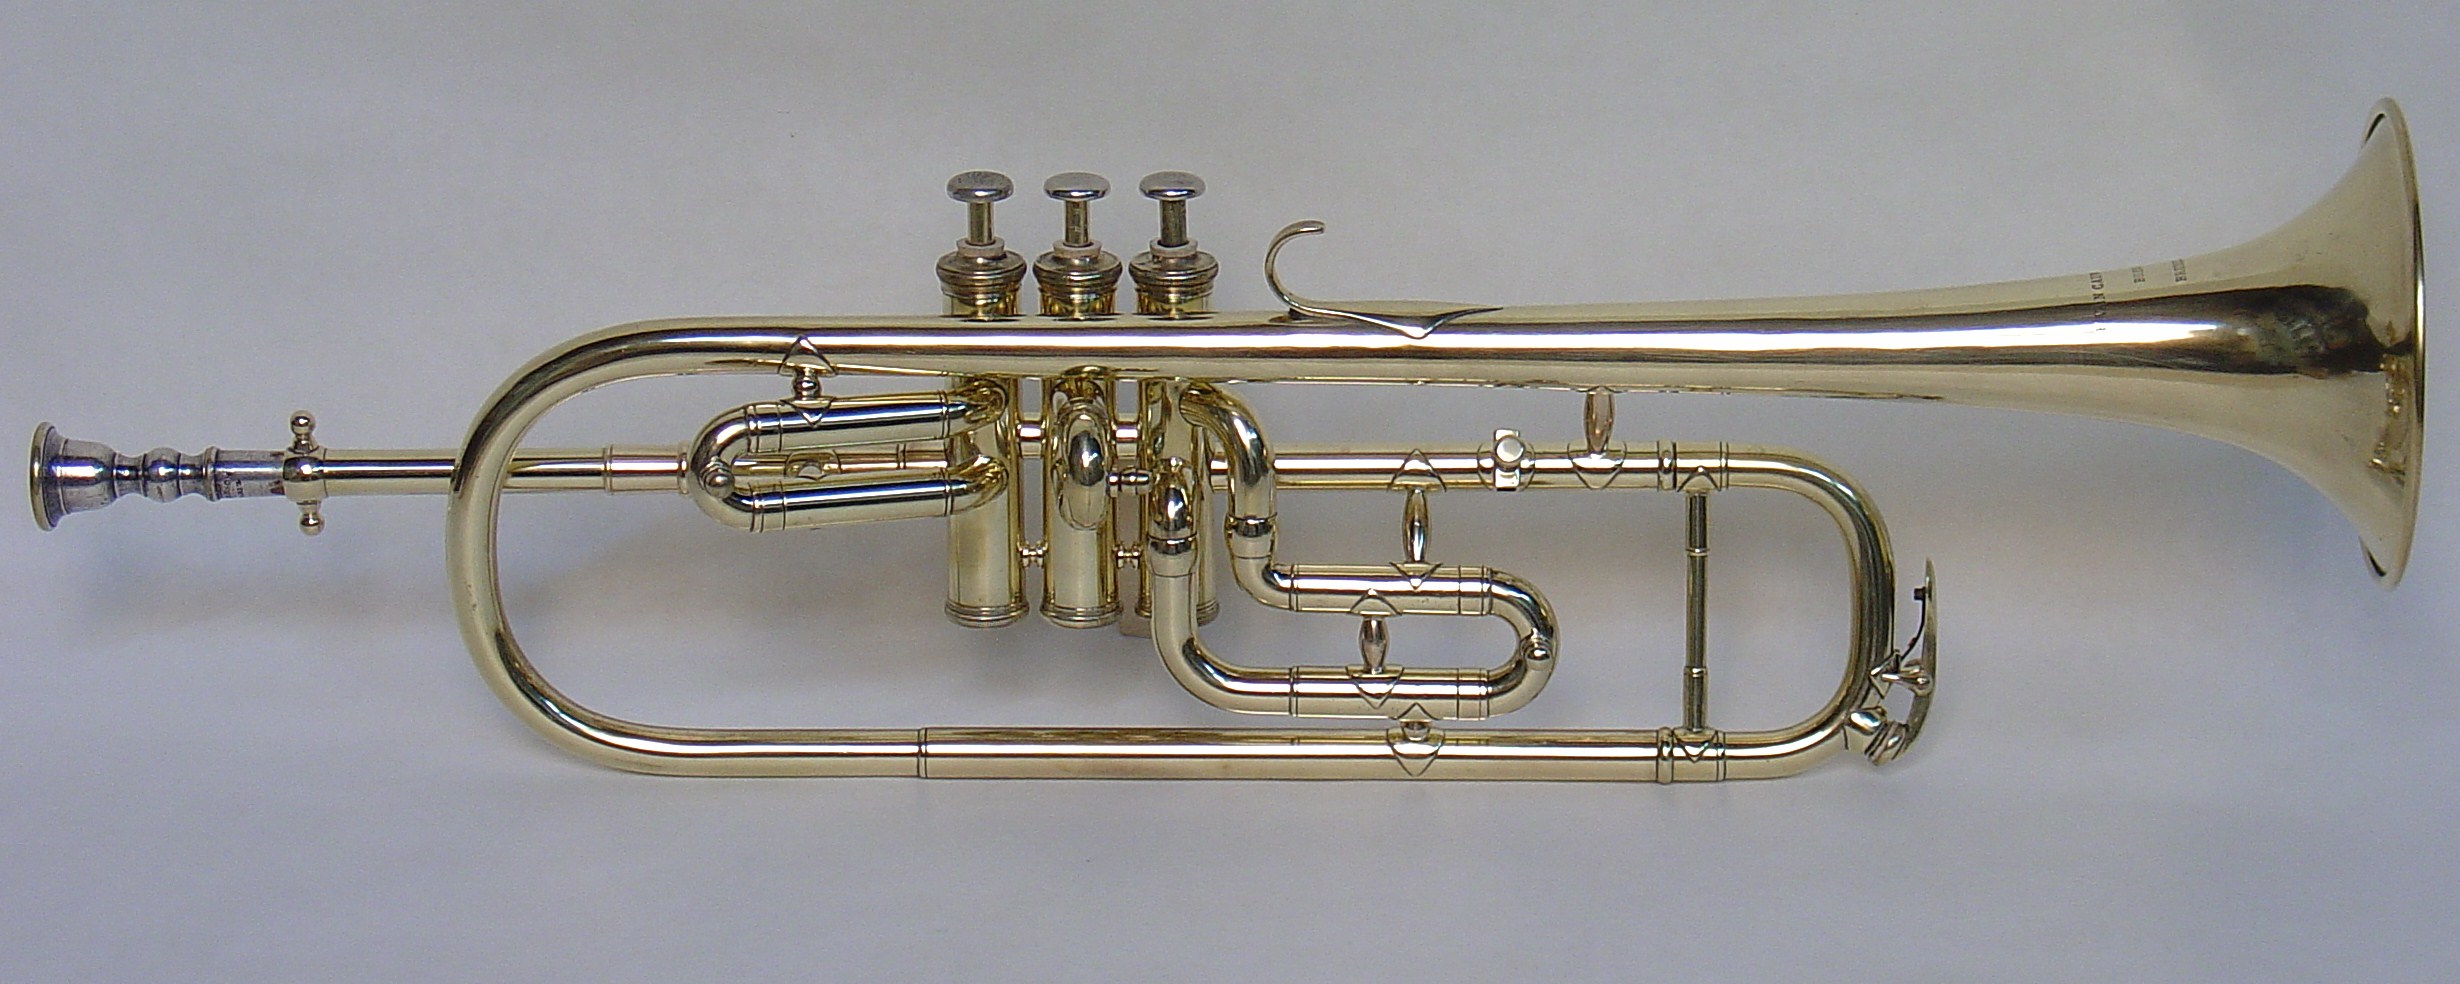 Belgian Trumpet by van Cauwelaert